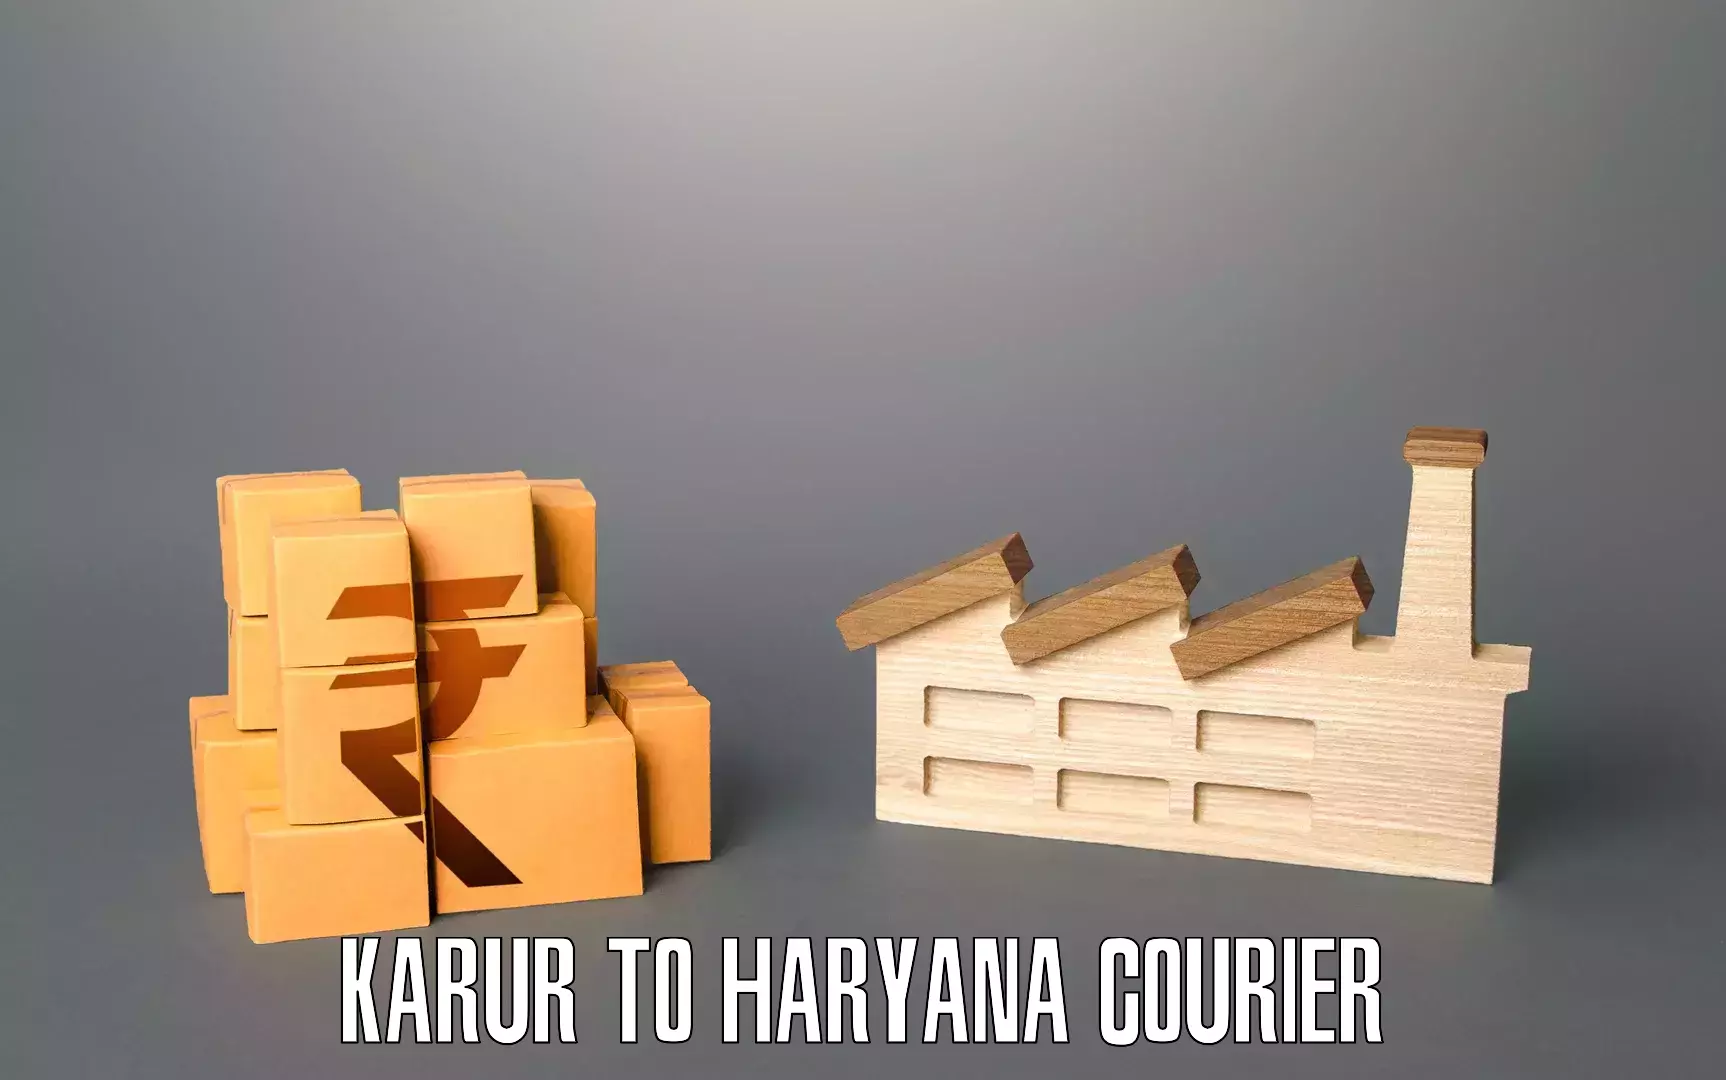 Furniture moving experts Karur to Haryana